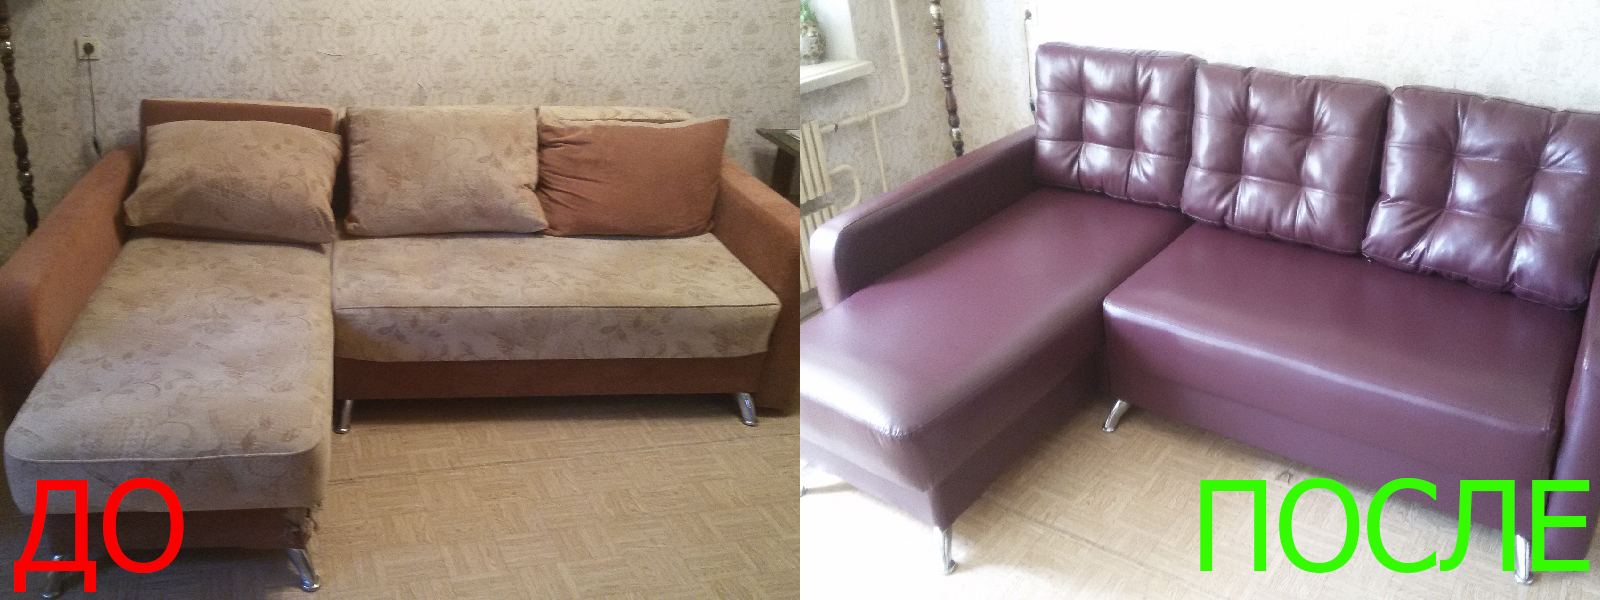 Ремонт диванов искусственной кожей в Краснодаре разумные цены на услуги, опытные специалисты